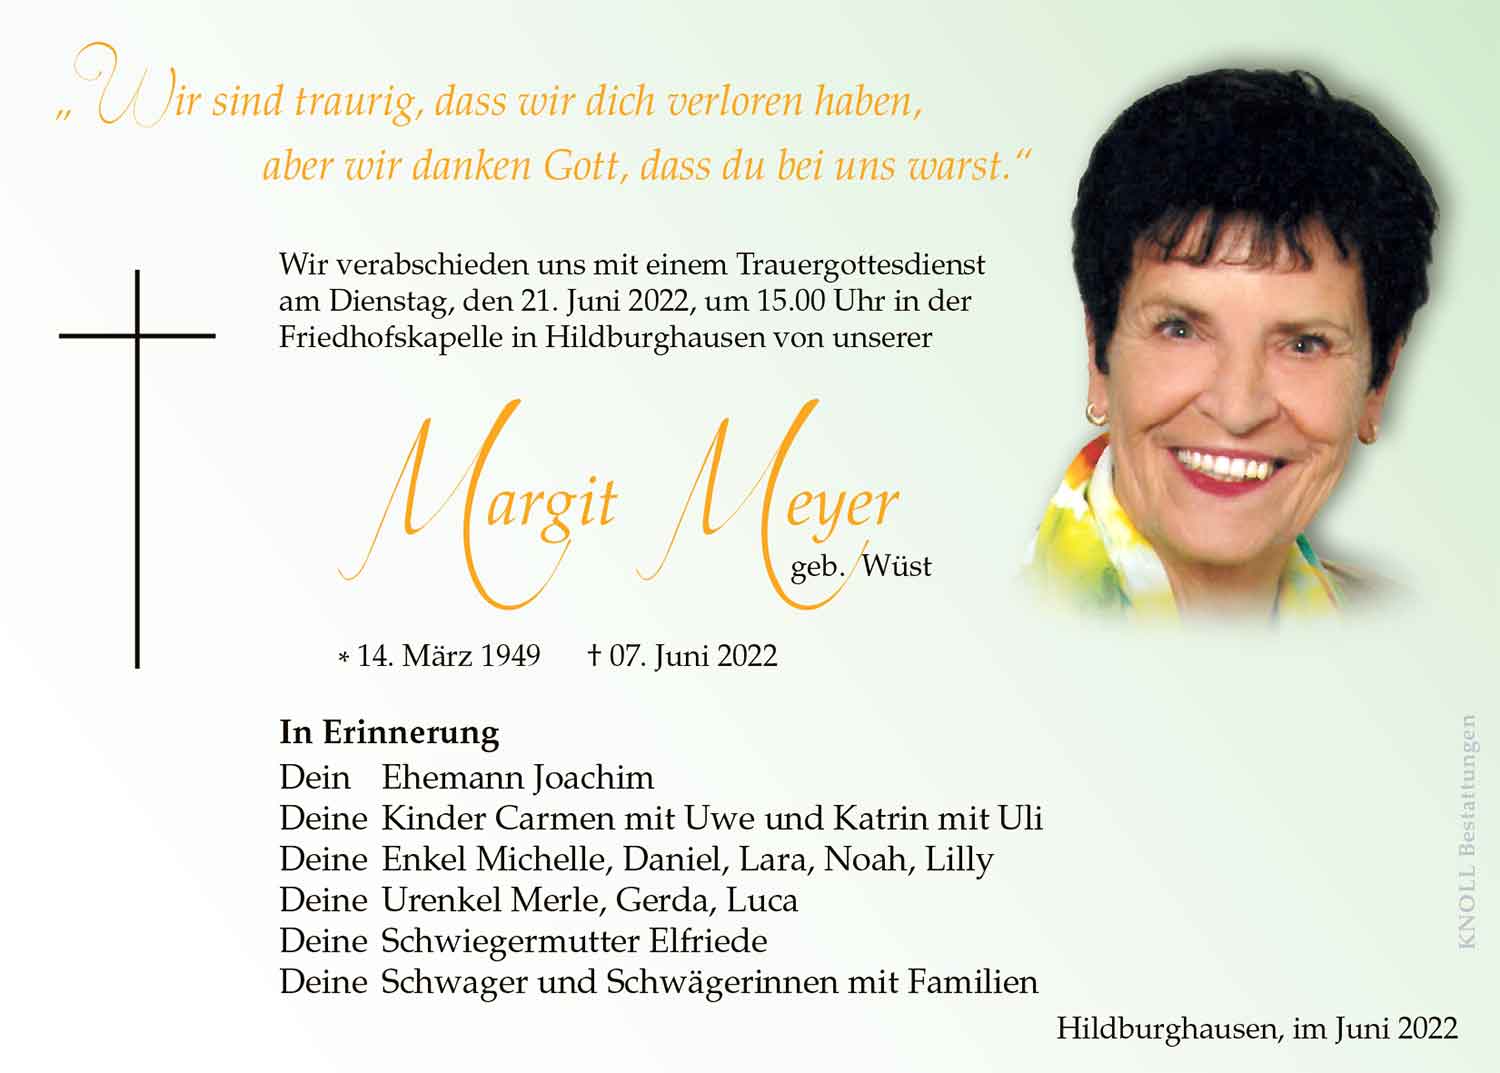 Trauer_Margit_Meyer